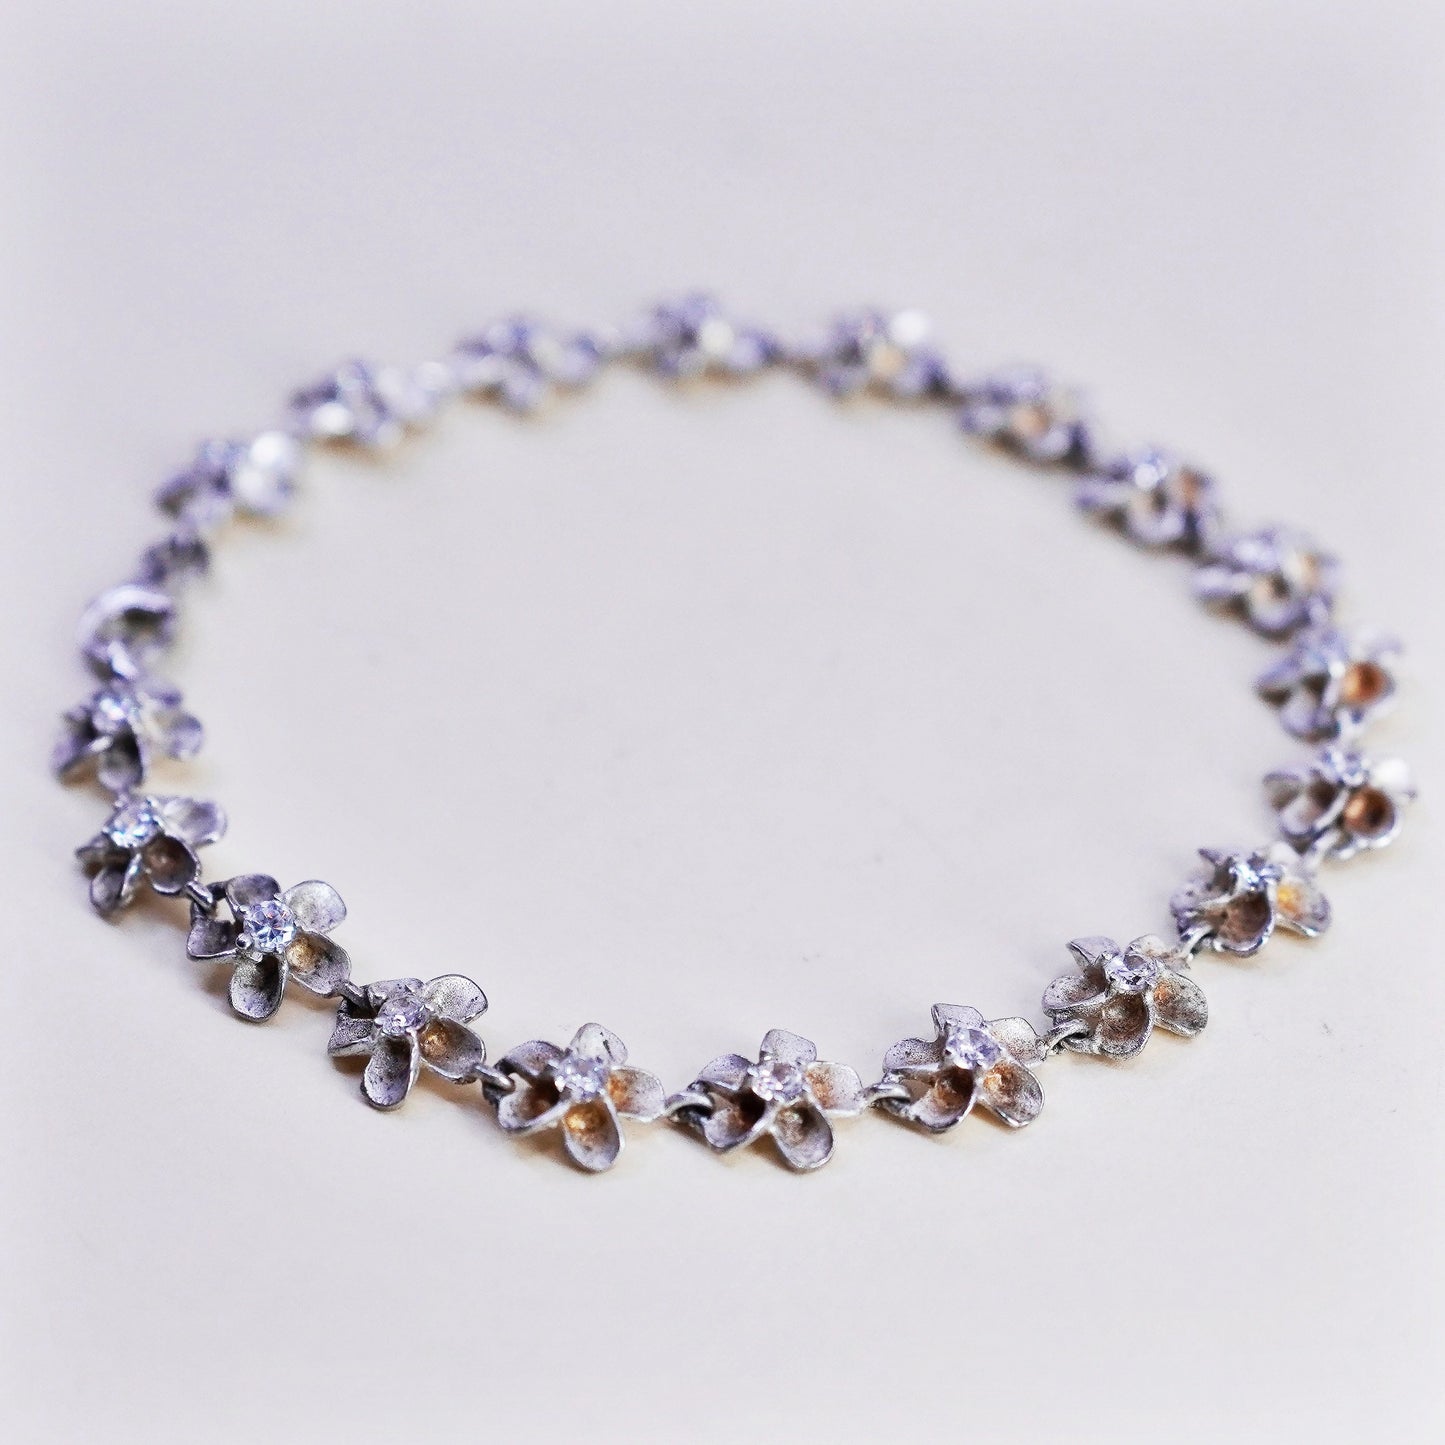 7.5”, sterling silver bracelet, 925 plumeria flowers with cz, handmade jewelry